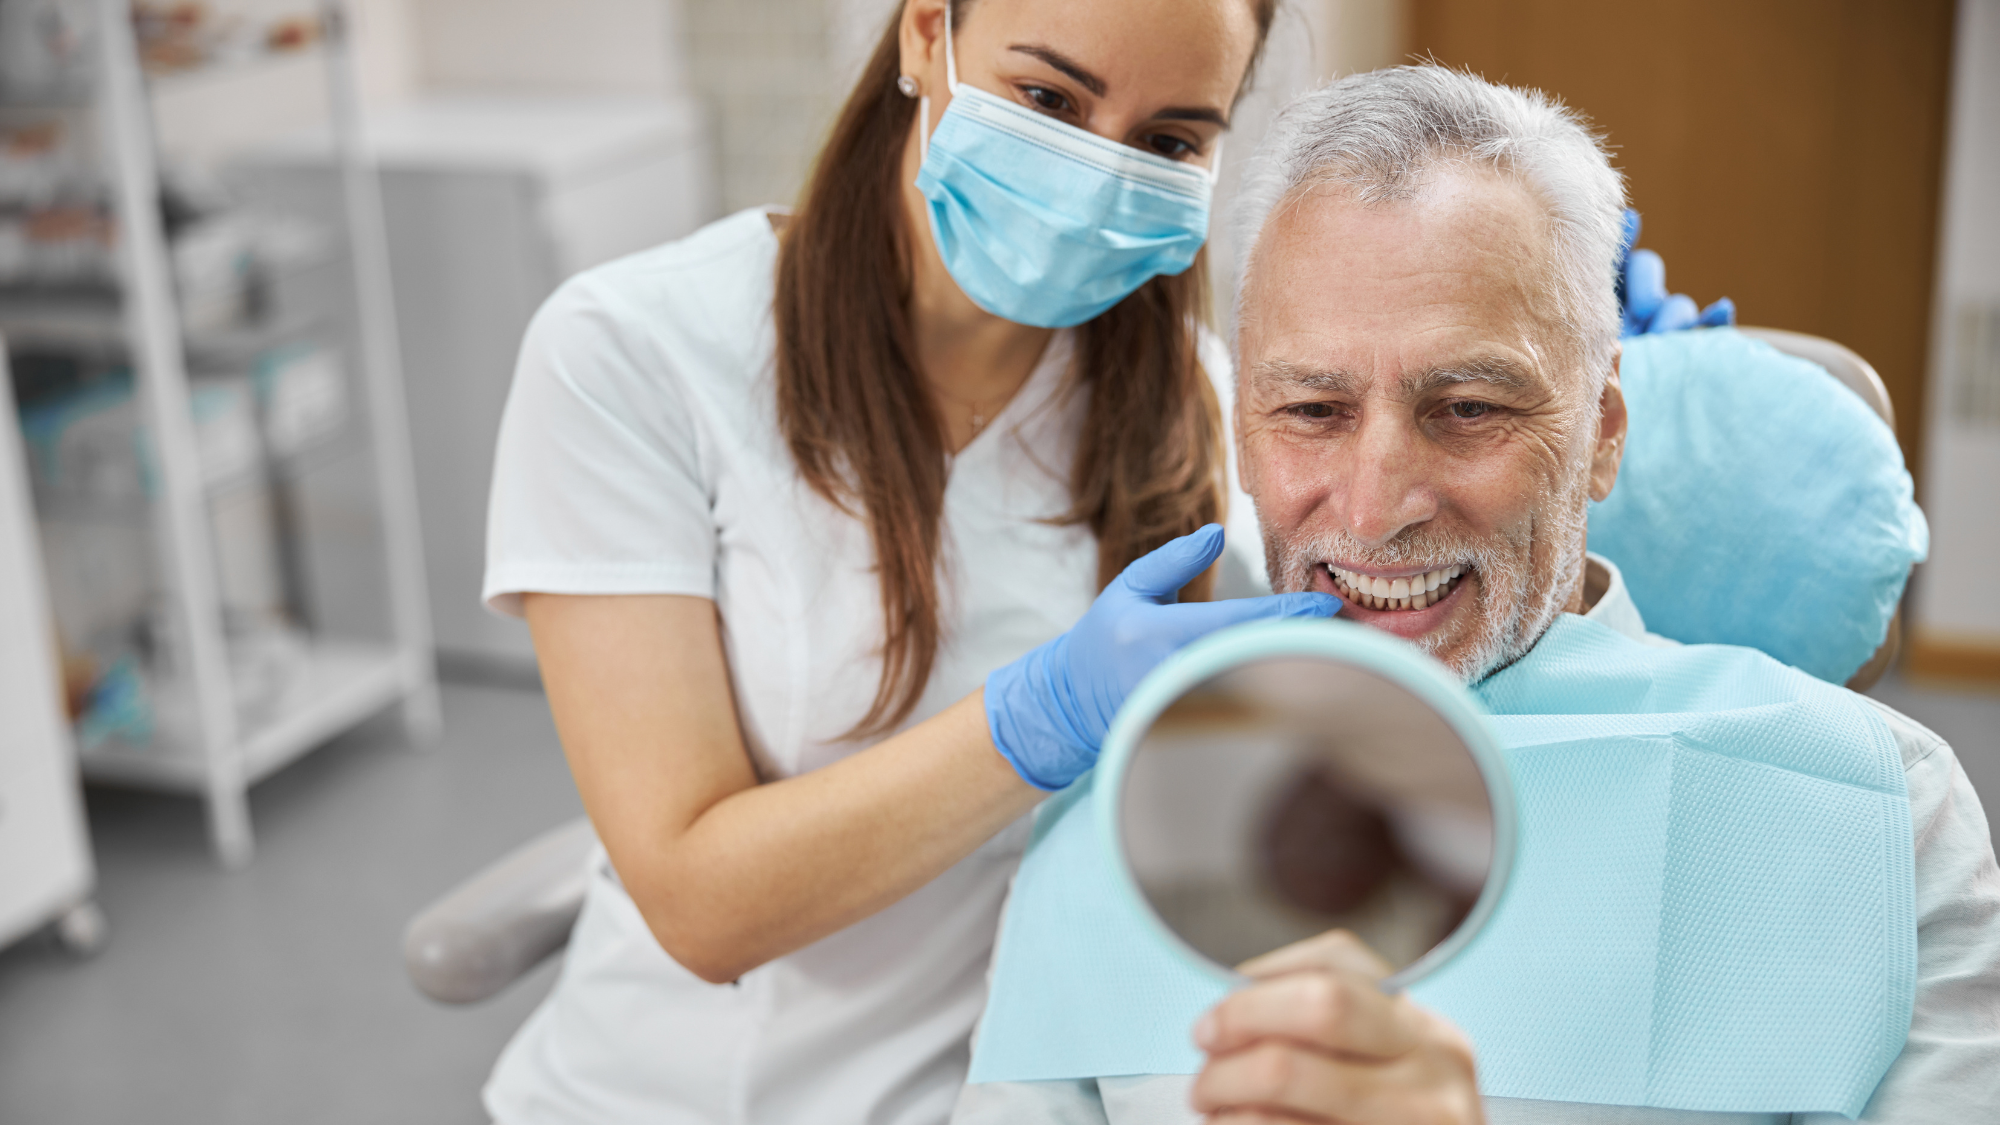 En pasient smiler fornøyd etter å ha fått nye tenner med behandling hos Eiksmarka Tannlegesenter